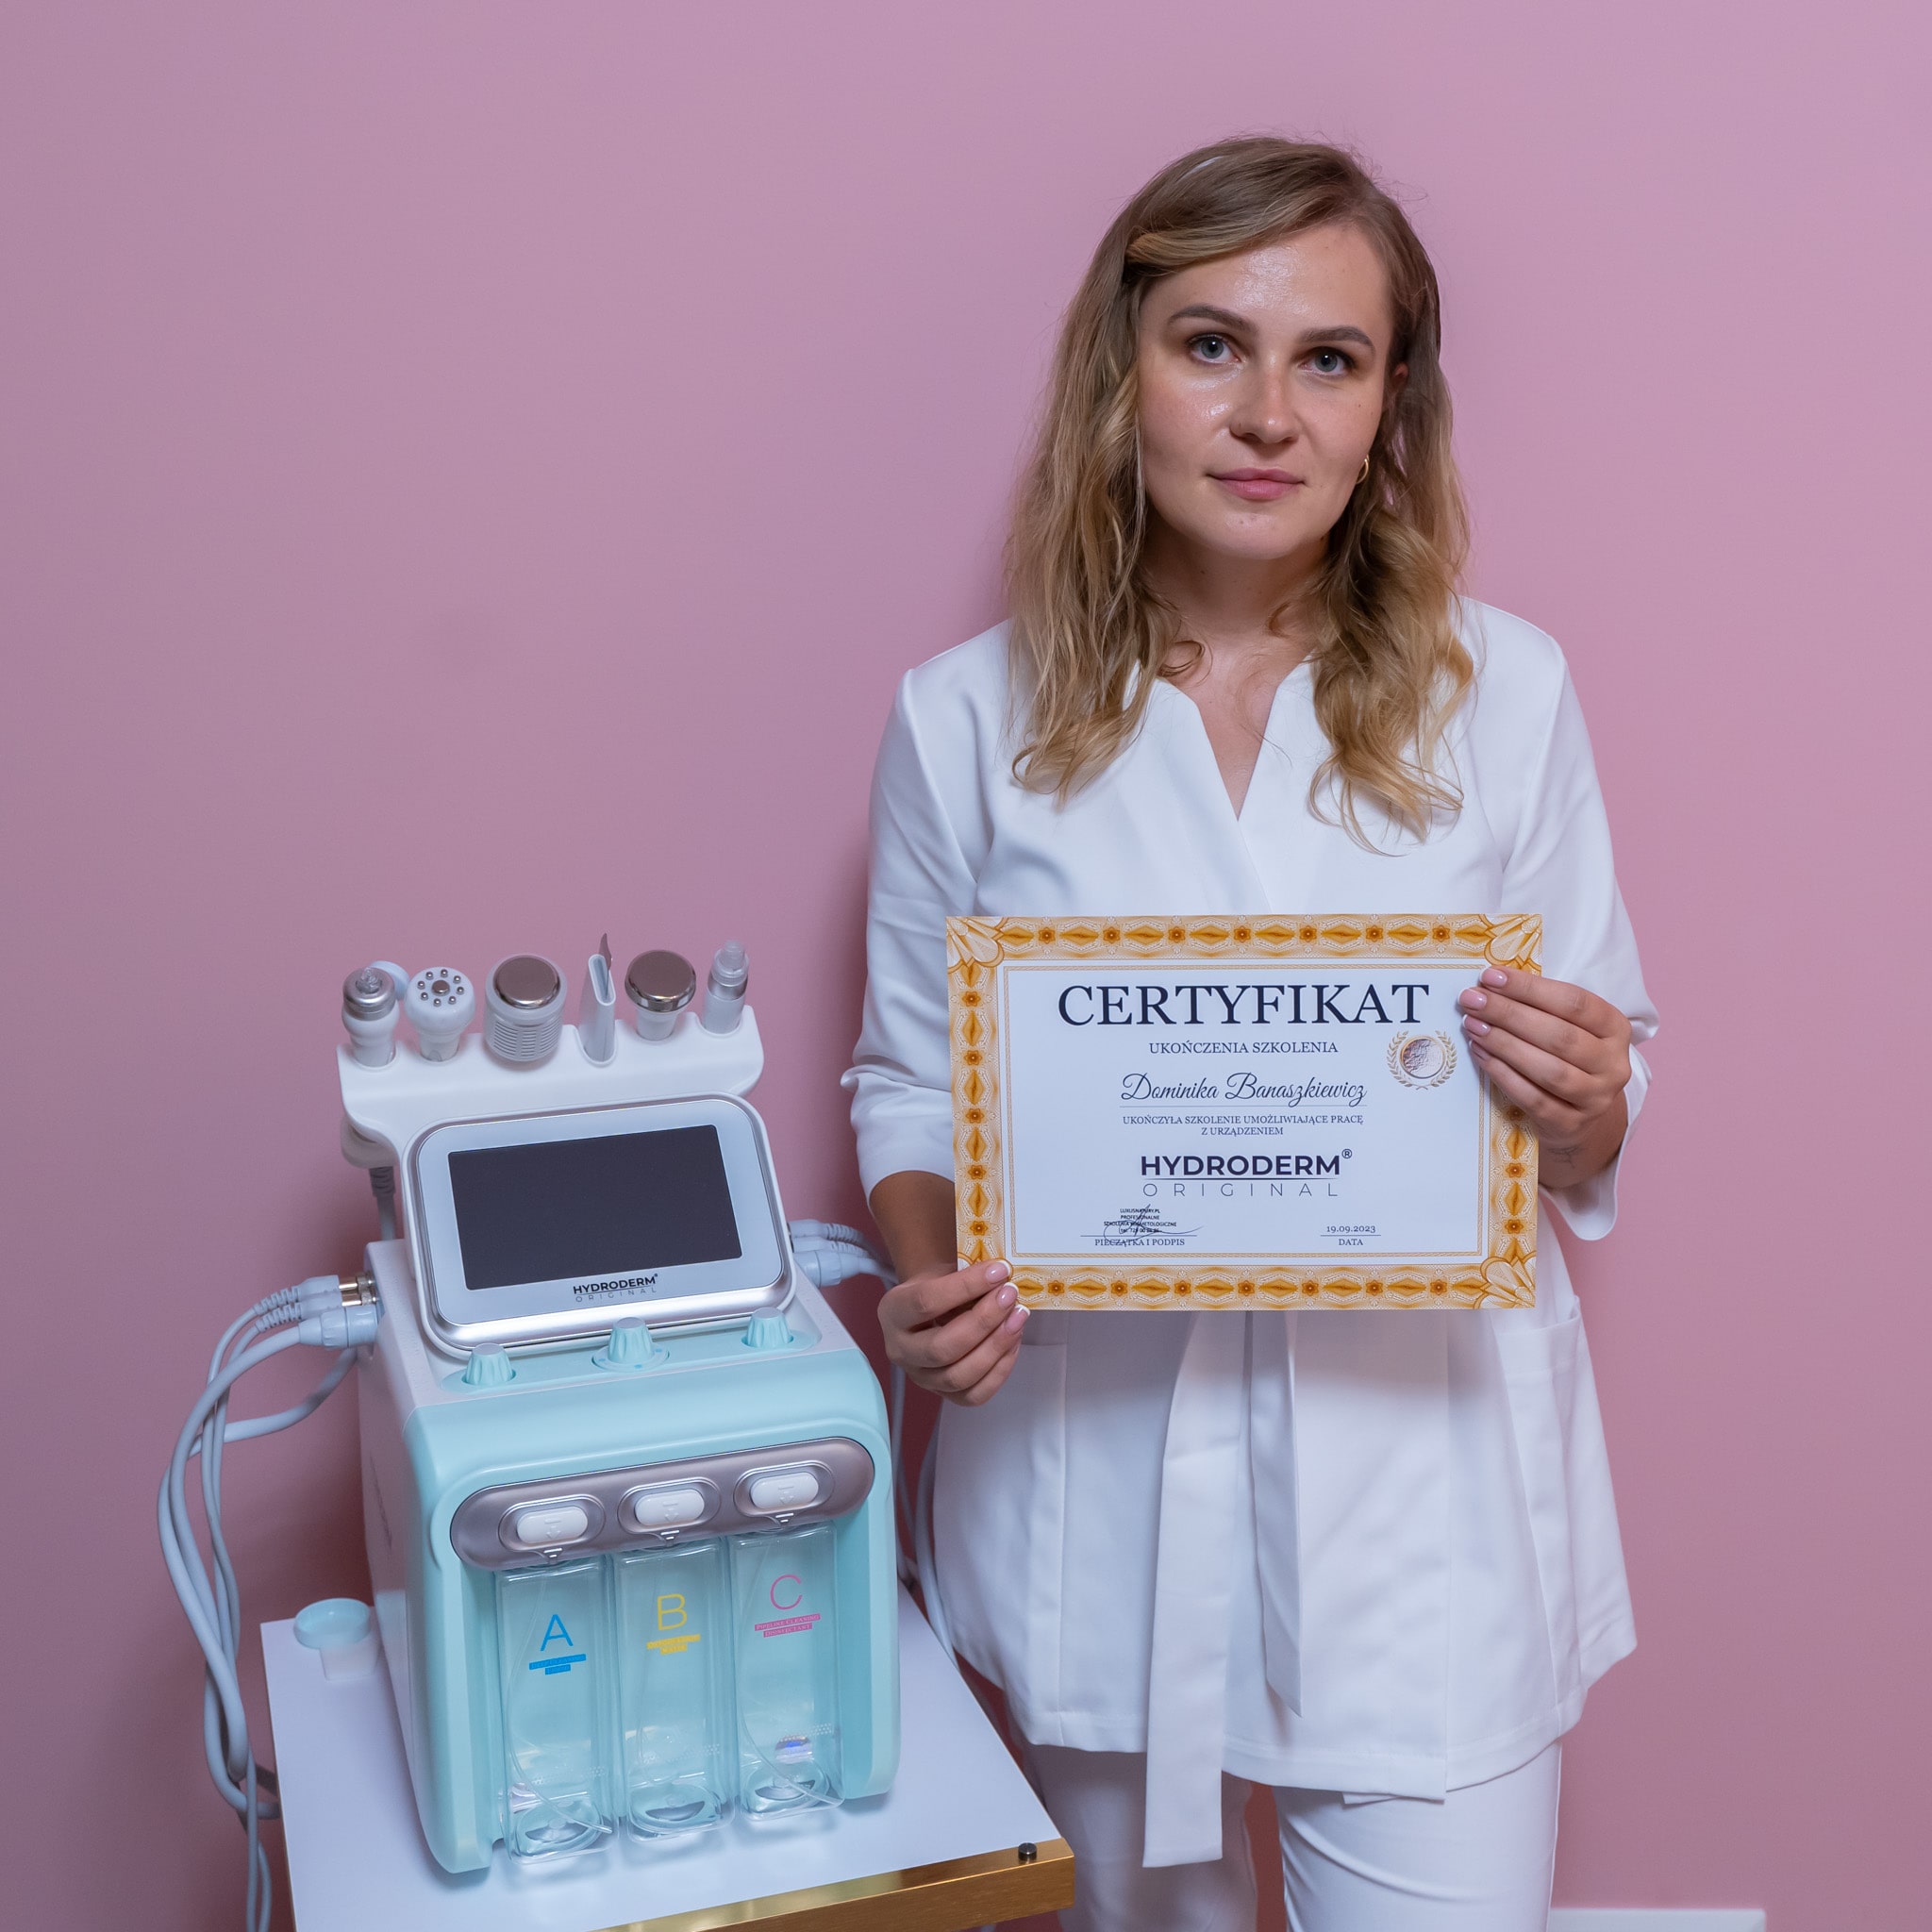 Certyfikacja i zakończenie - kolejny krok w karierze kosmetologa